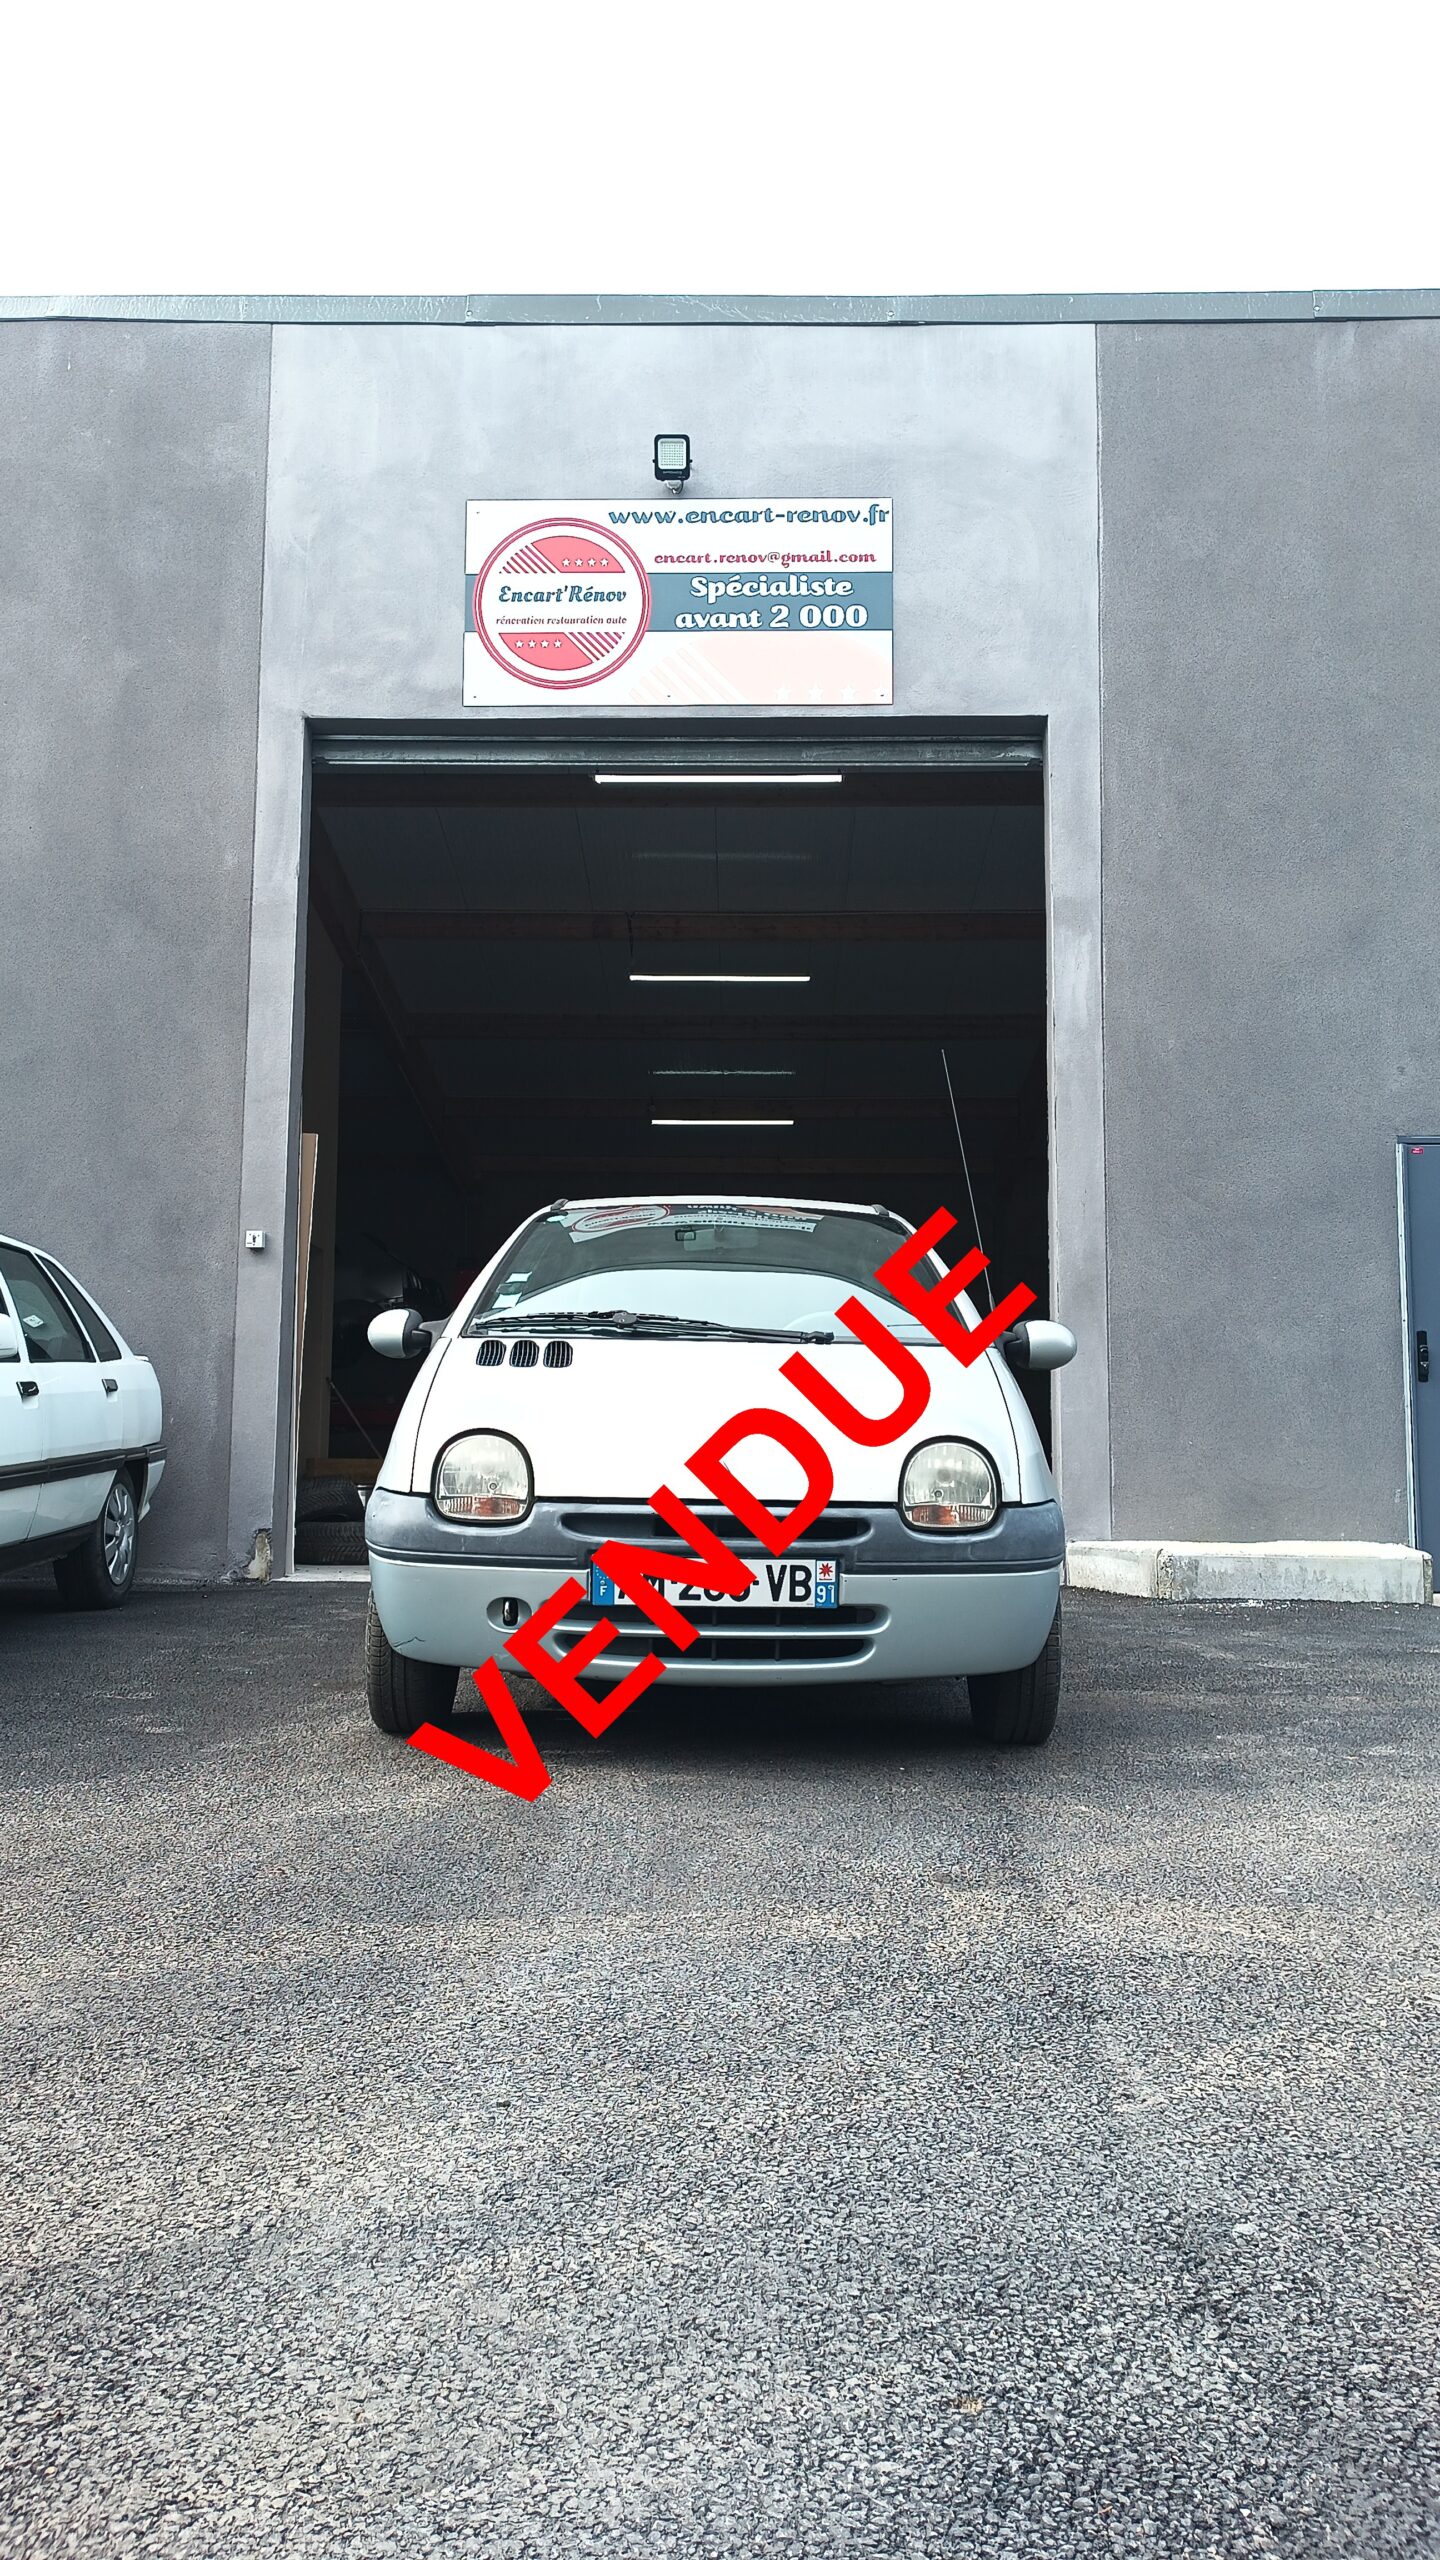 Lire la suite à propos de l’article A vendre Renault Twingo 1.2 2002